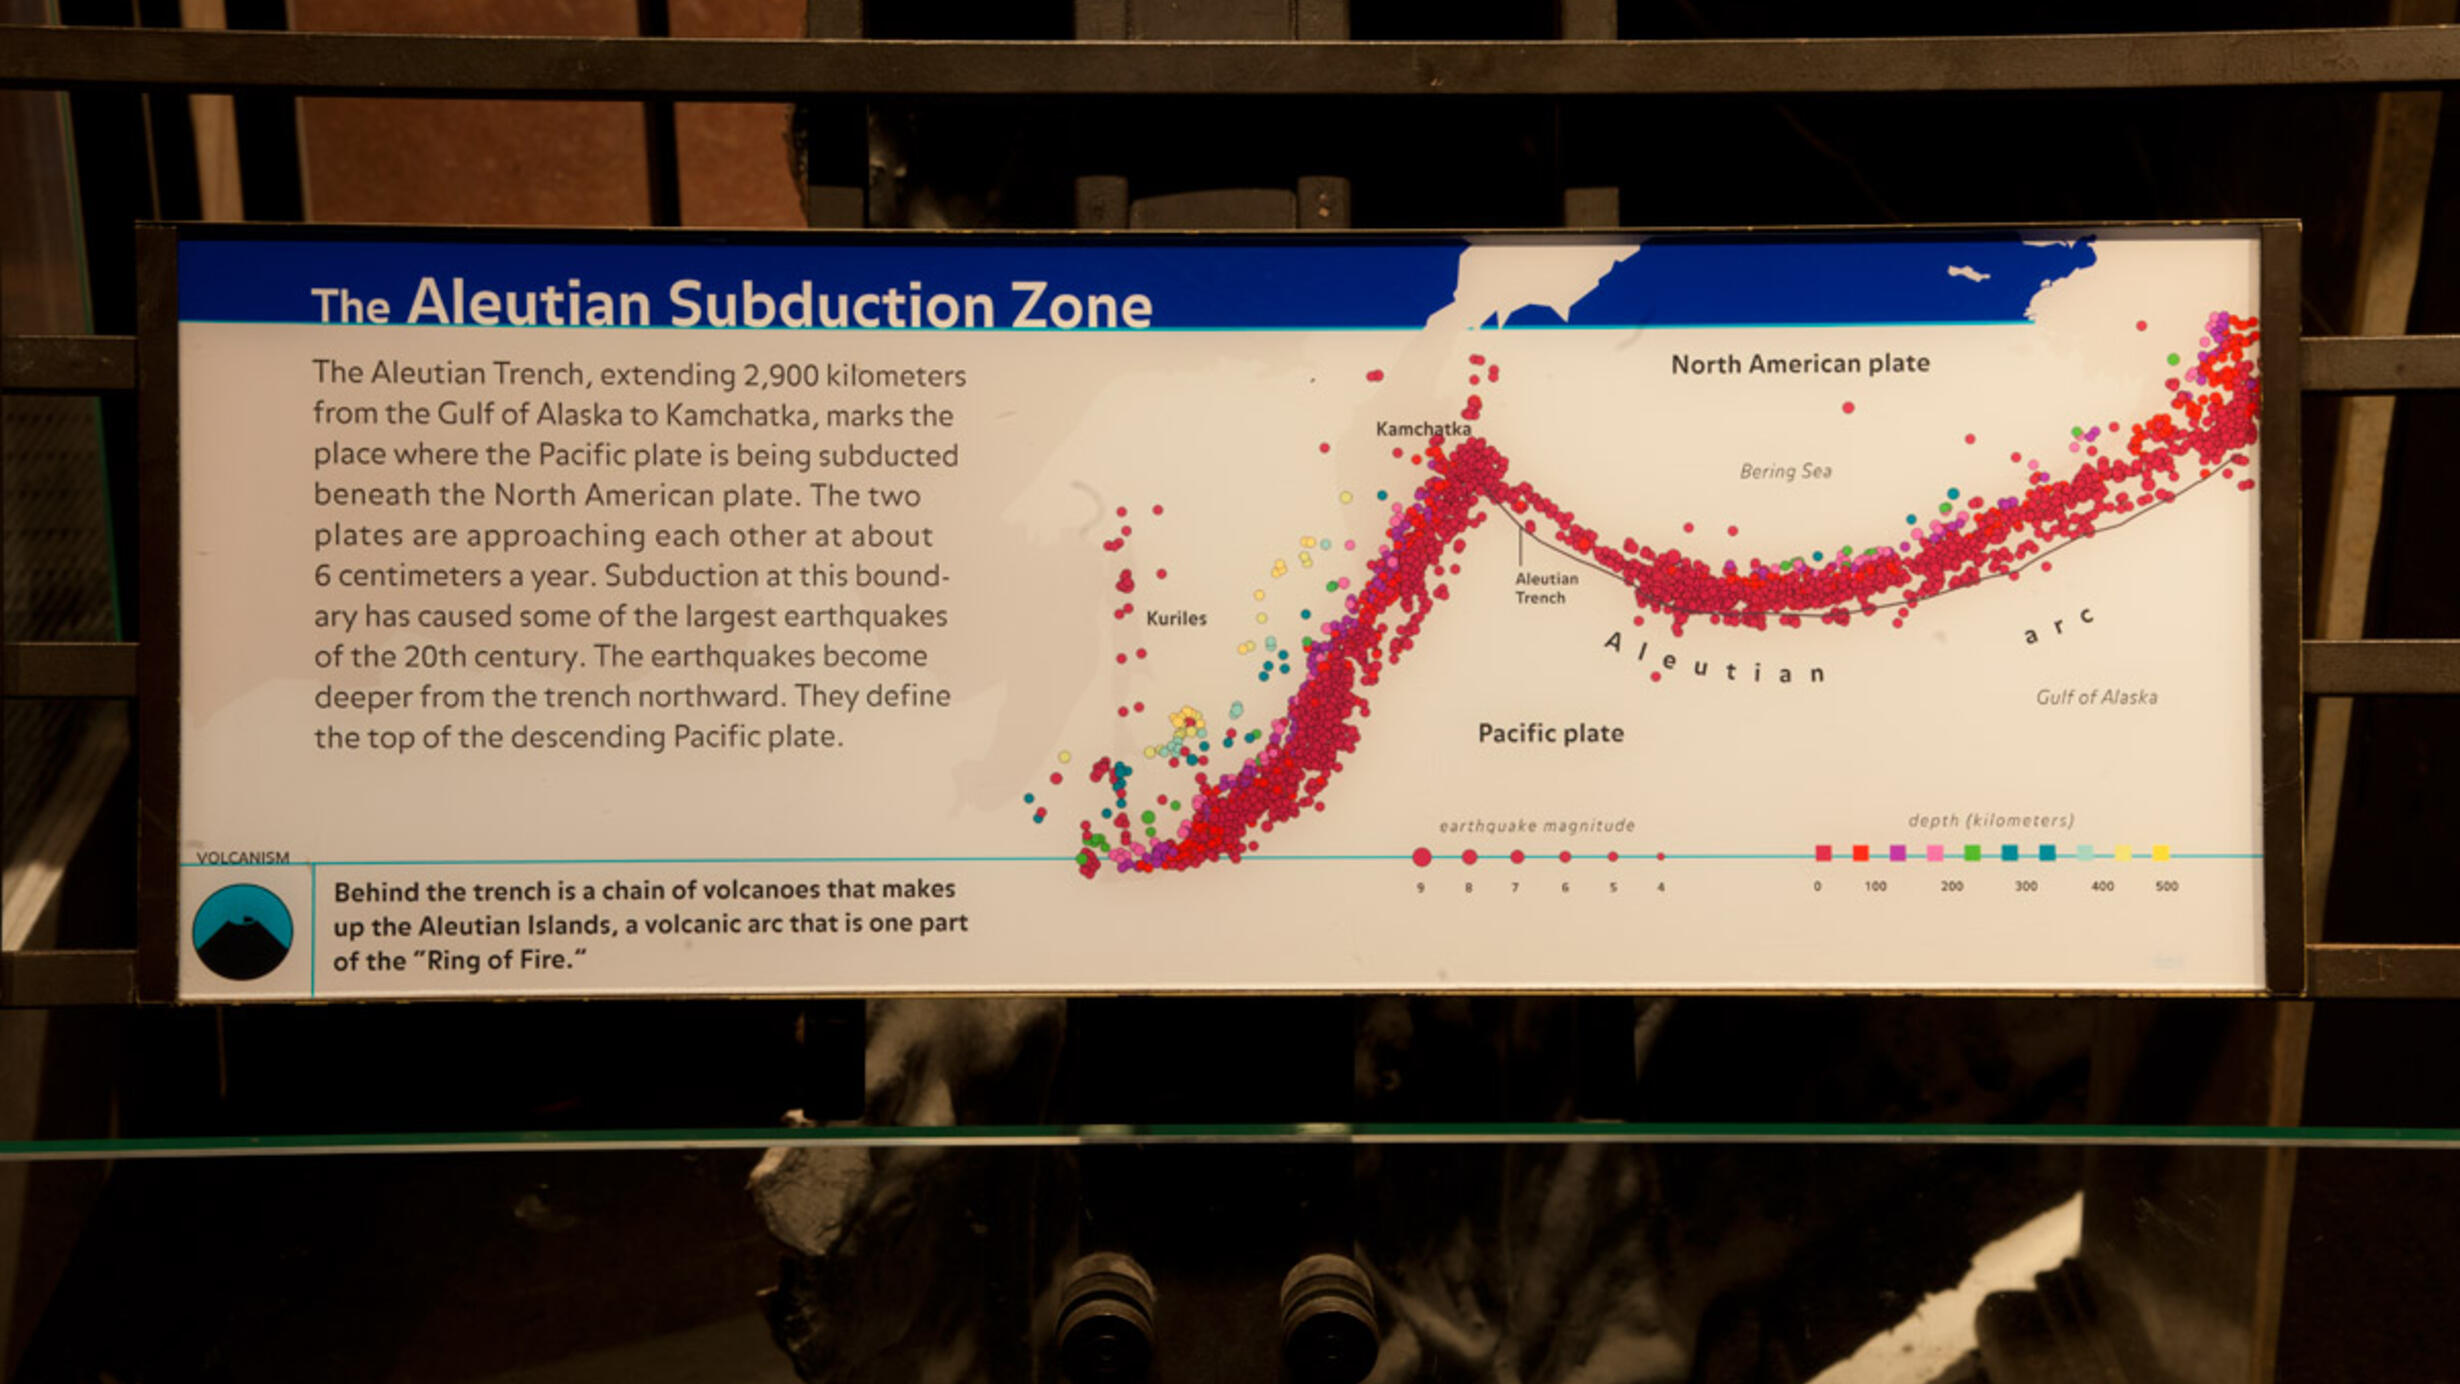 The Aleutian Subduction Zone